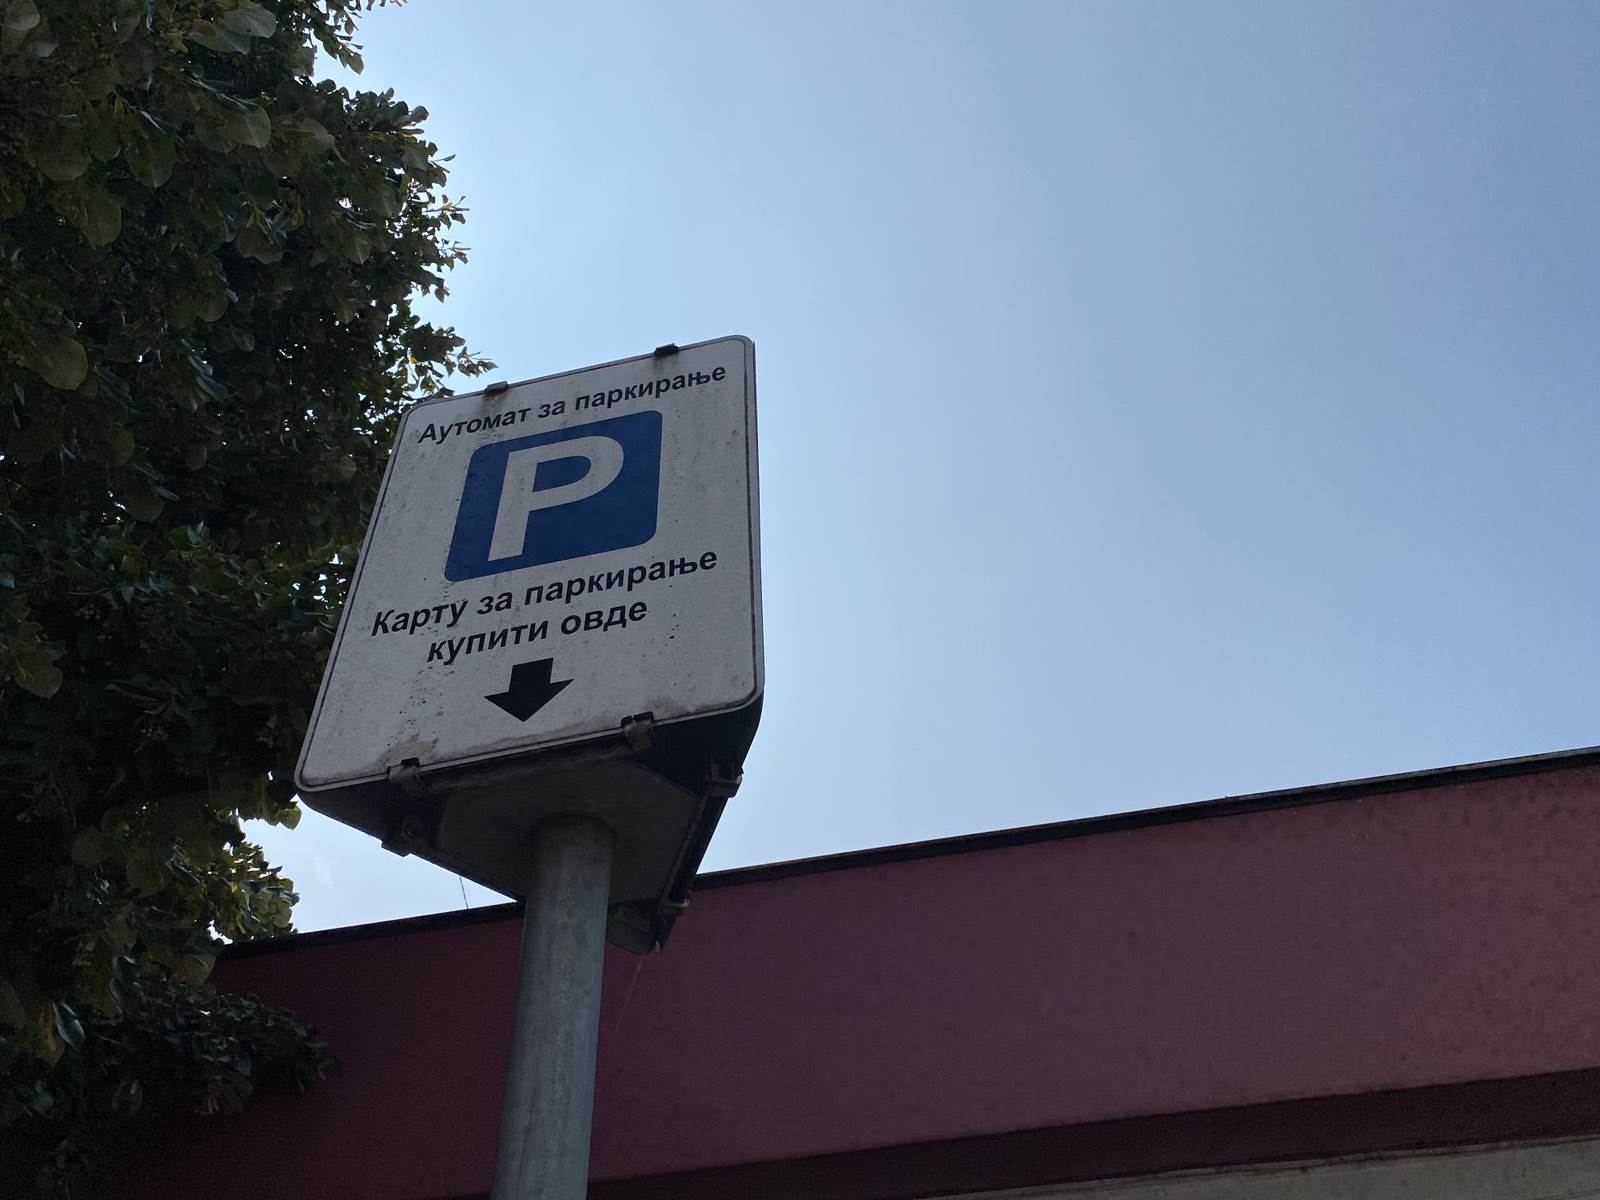  Počinje naplata parkinga u Banjaluci 